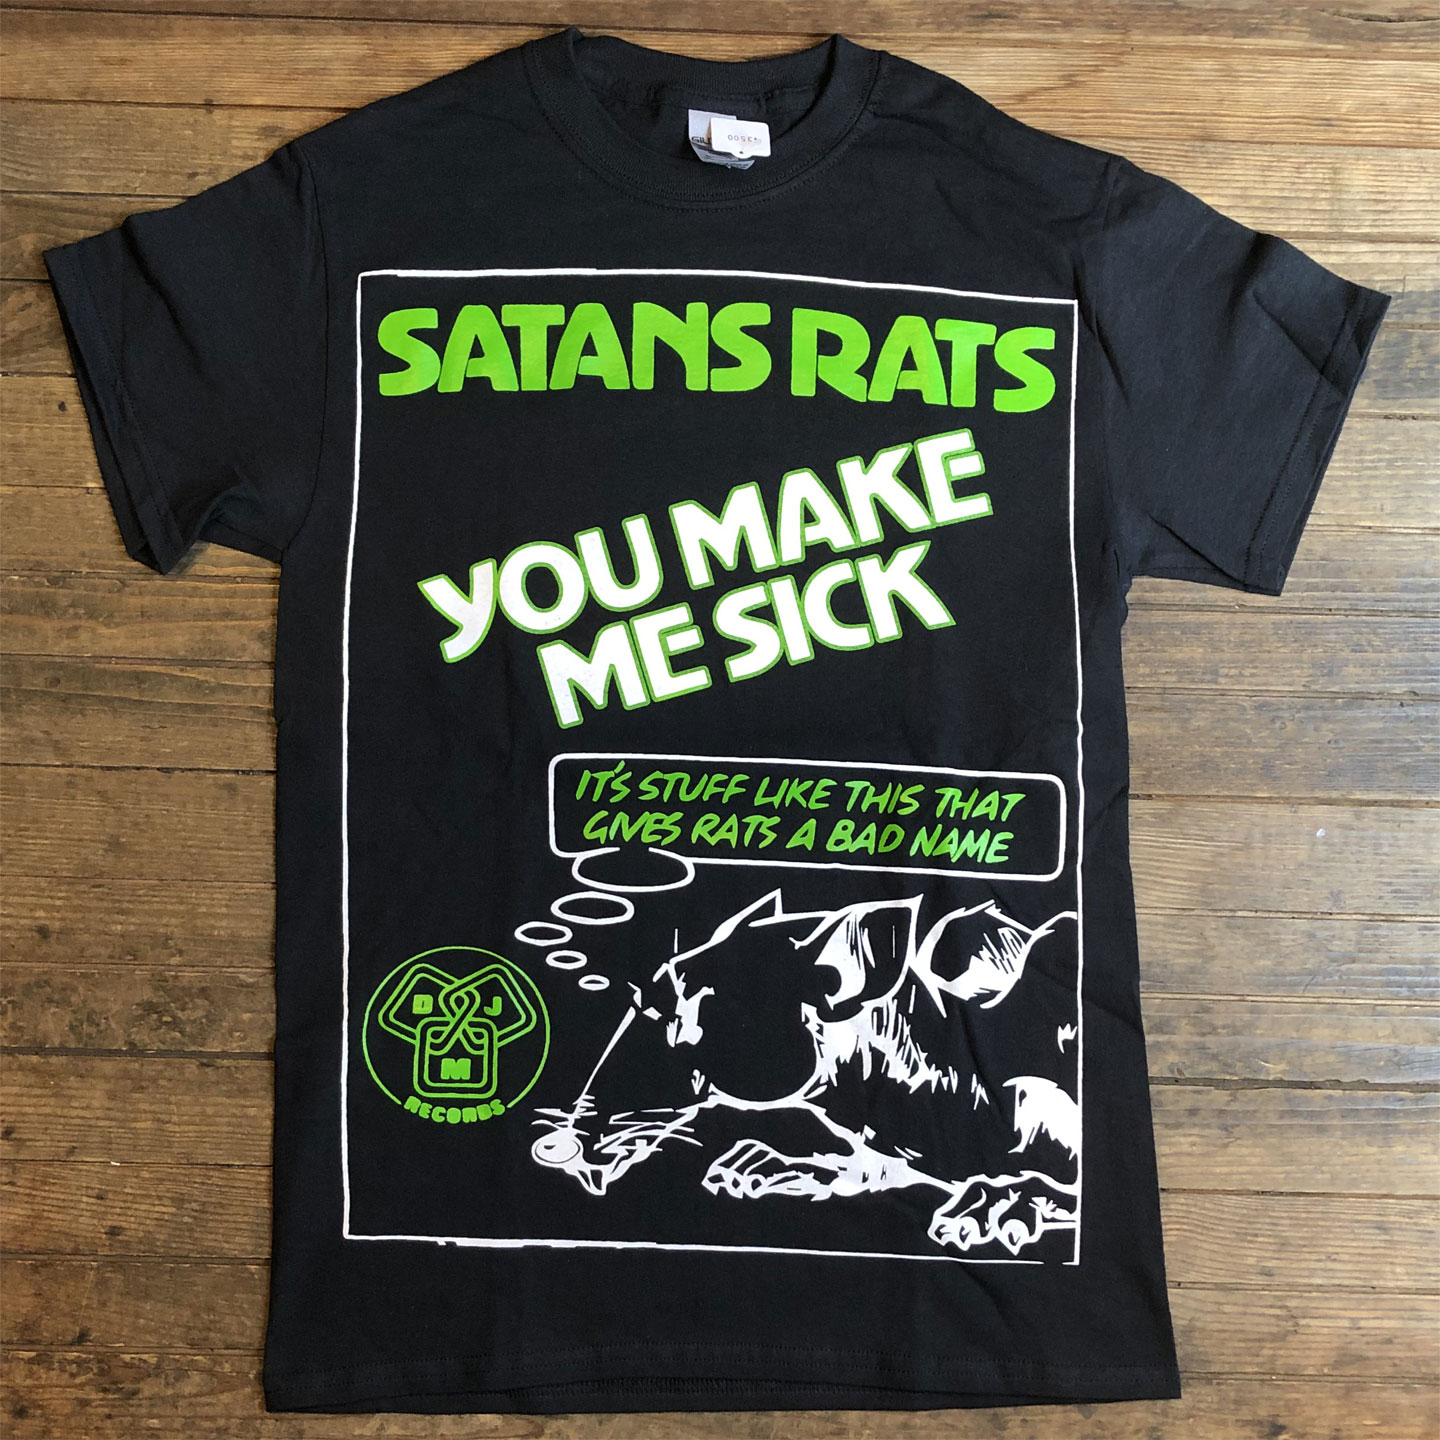 SATANS RATS Tシャツ YOU MAKE ME SICK